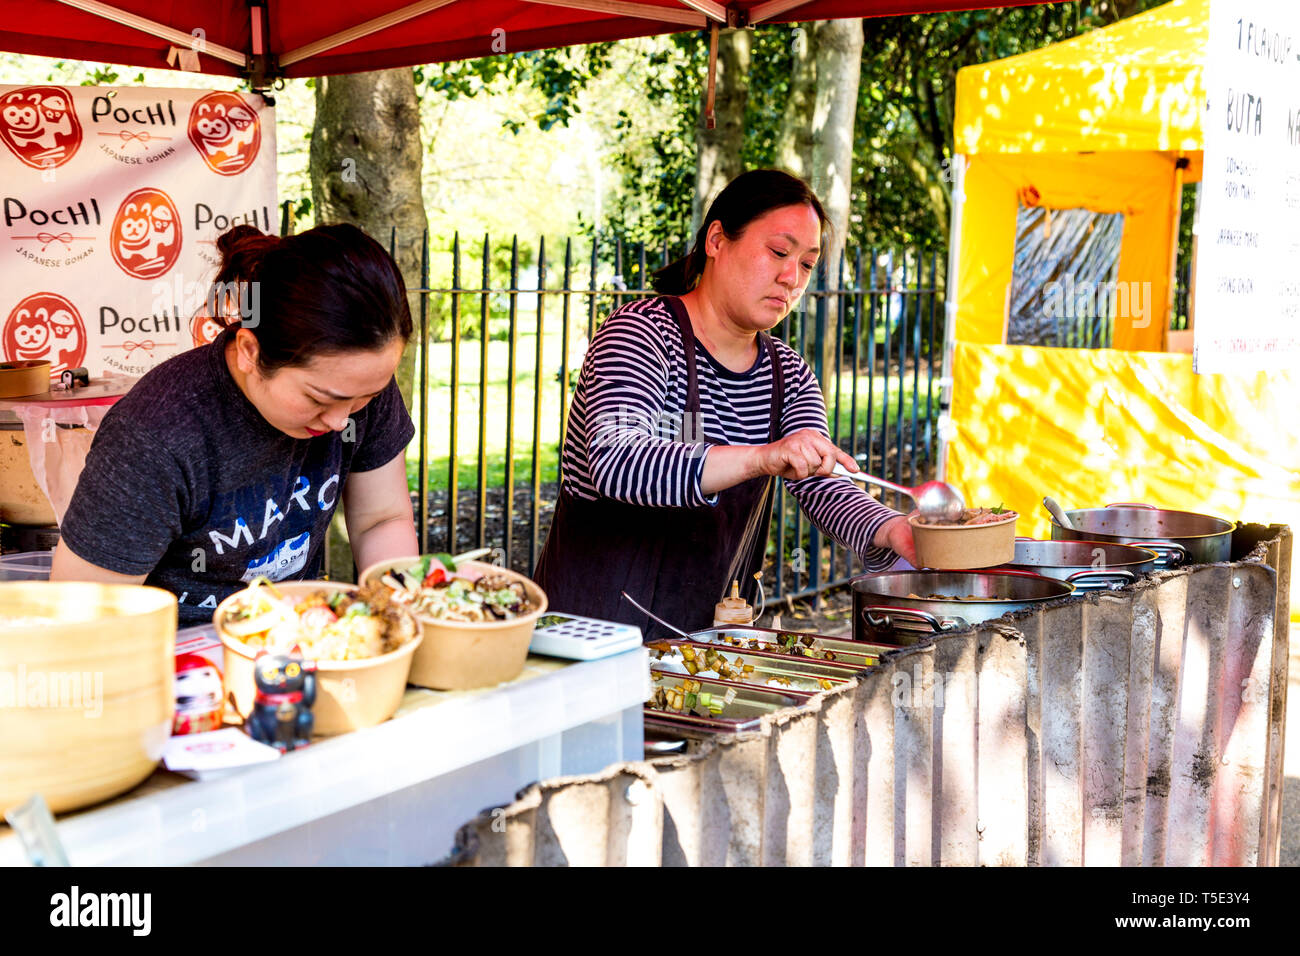 L'alimentation de rue japonais pochi, femme bols à riz bento au marché de Victoria Park, London, UK Banque D'Images